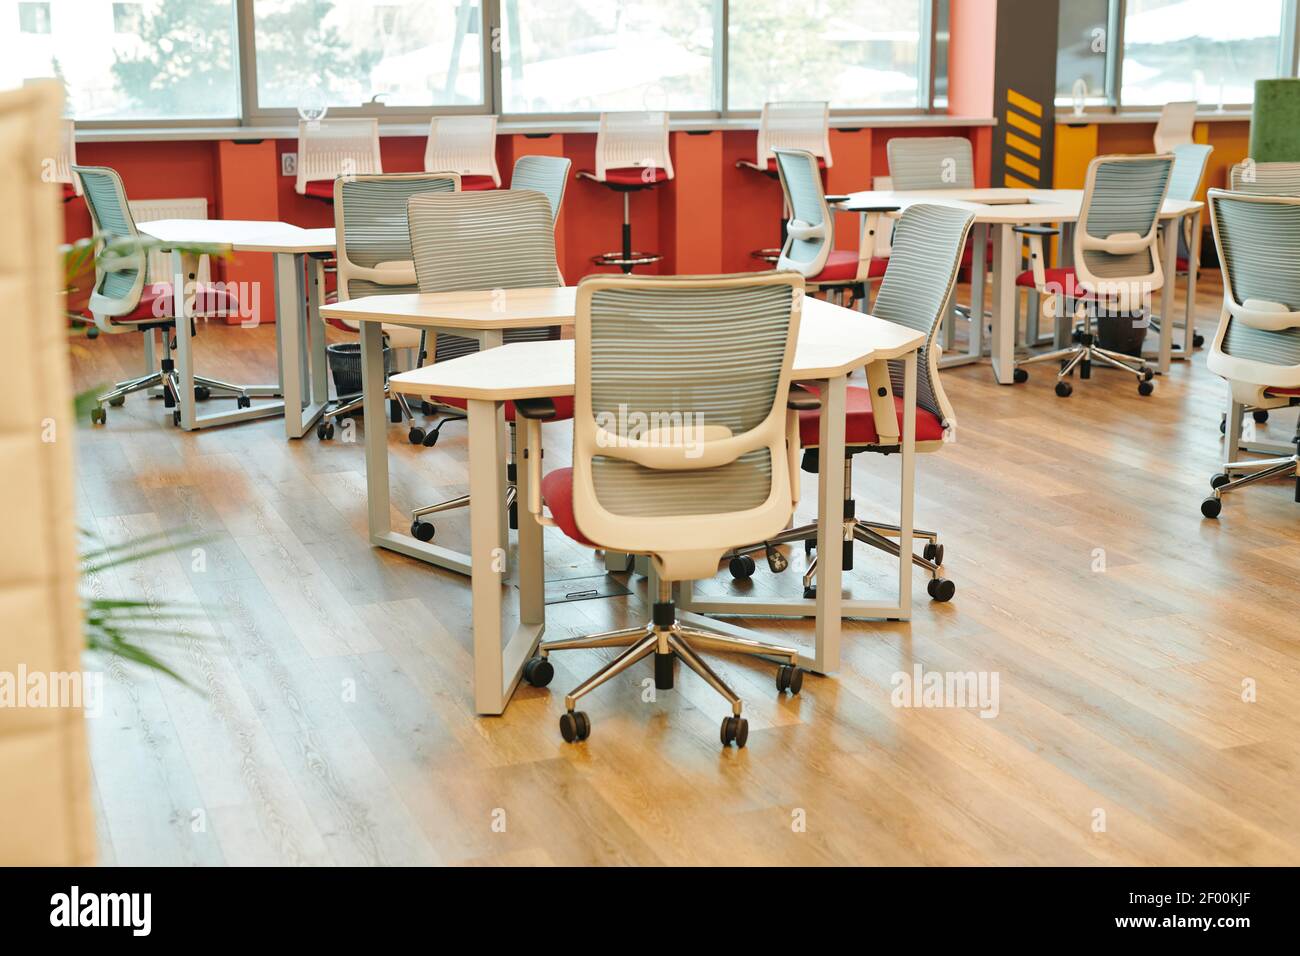 Interieur des modernen großen offenen Raum Büro mit vielen Stühlen An Tischen und entlang Fensterbänken ohne Arbeiter oder Manager In der Nähe Stockfoto